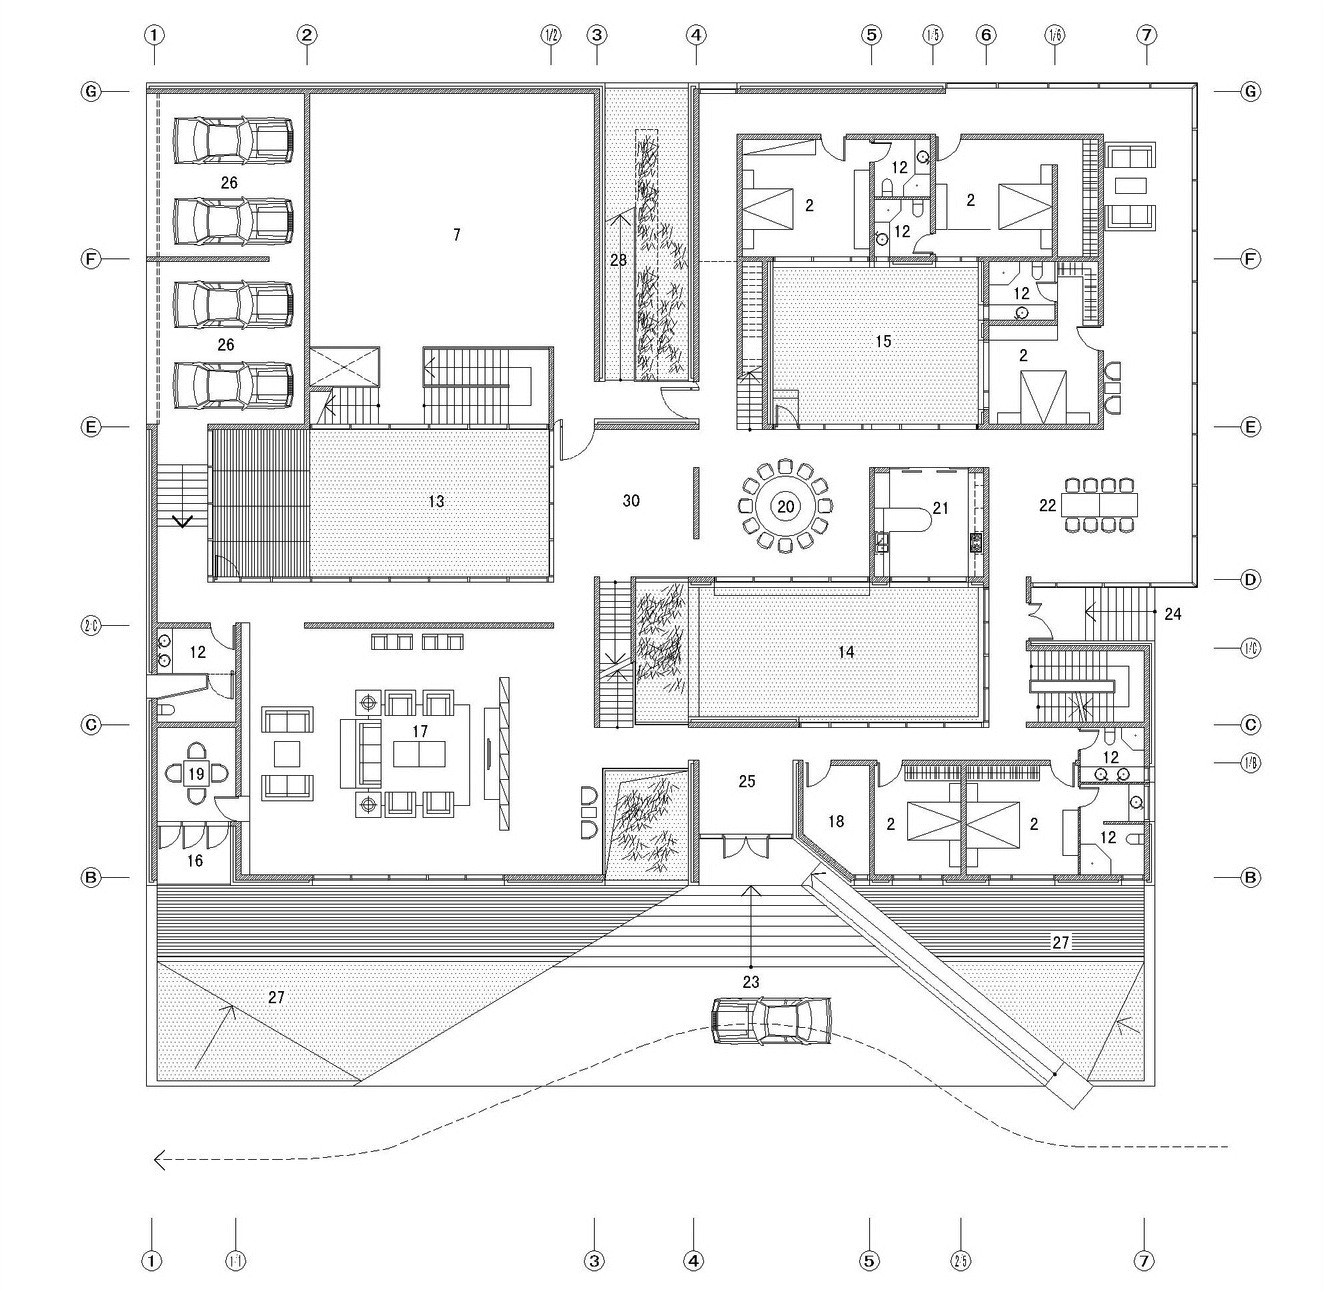 5012e72d28ba0d06580004a7 the concave house tao lei architect studio plan